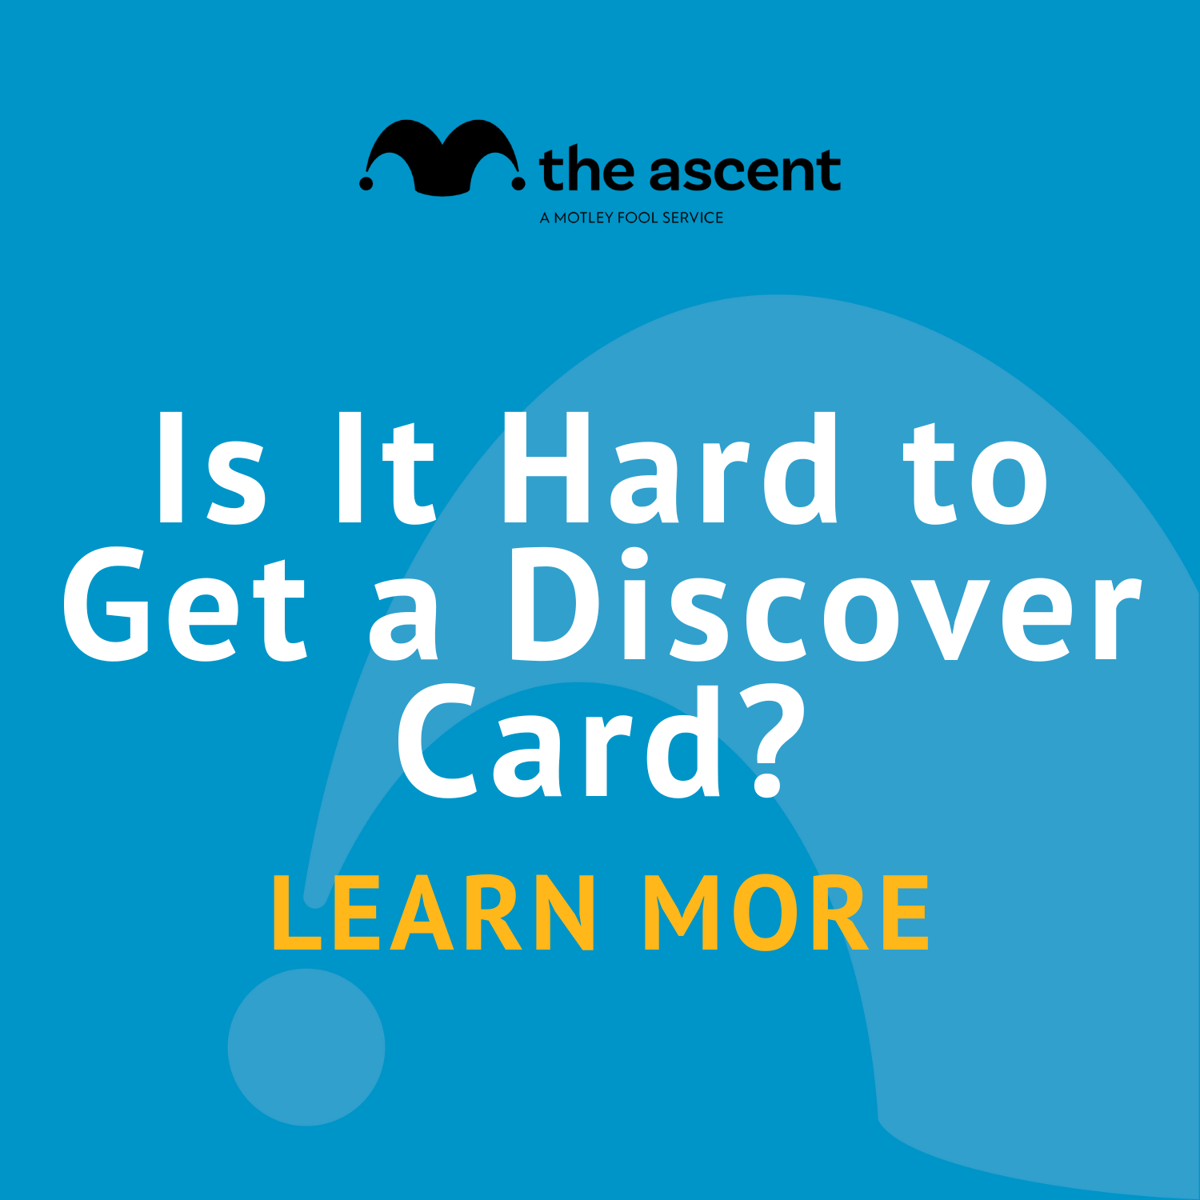 Quão difícil é descobrir o cartão para obter?